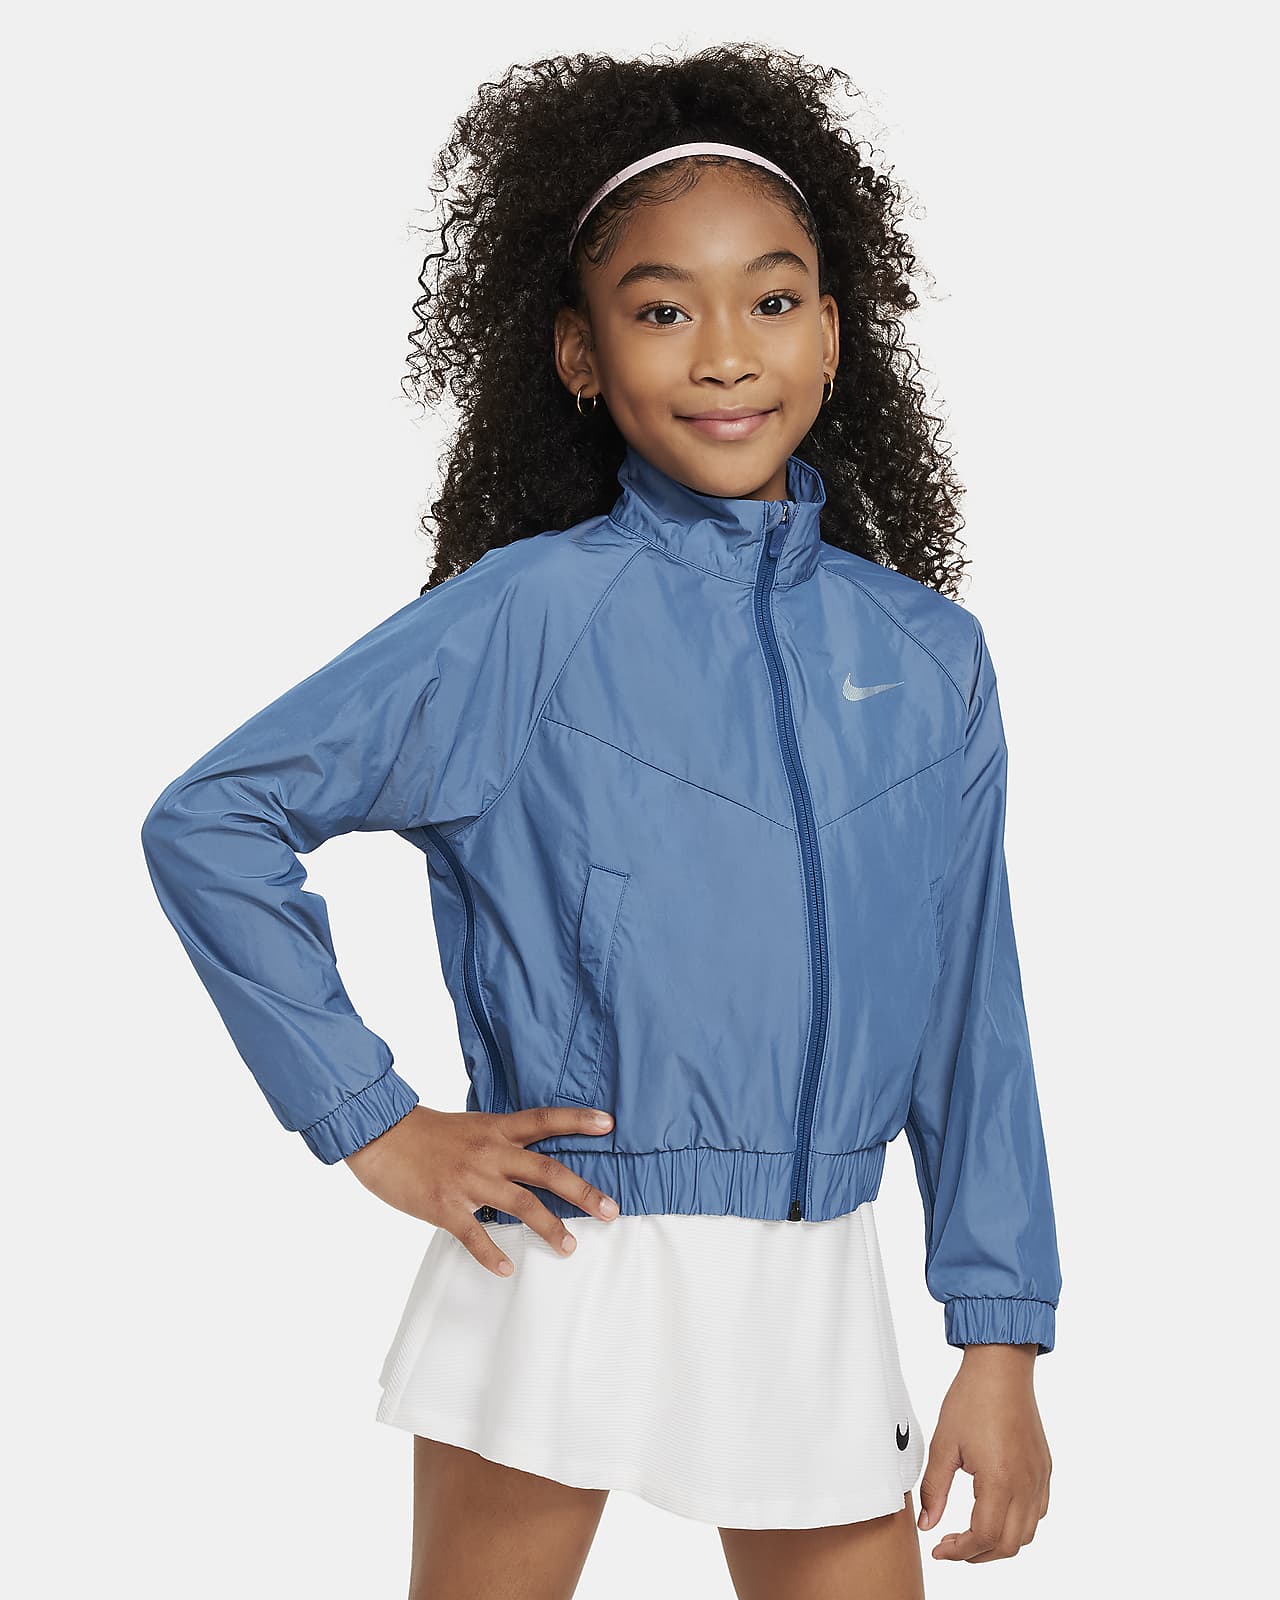 Volná bunda Nike Sportswear Windrunner pro větší děti (dívky)